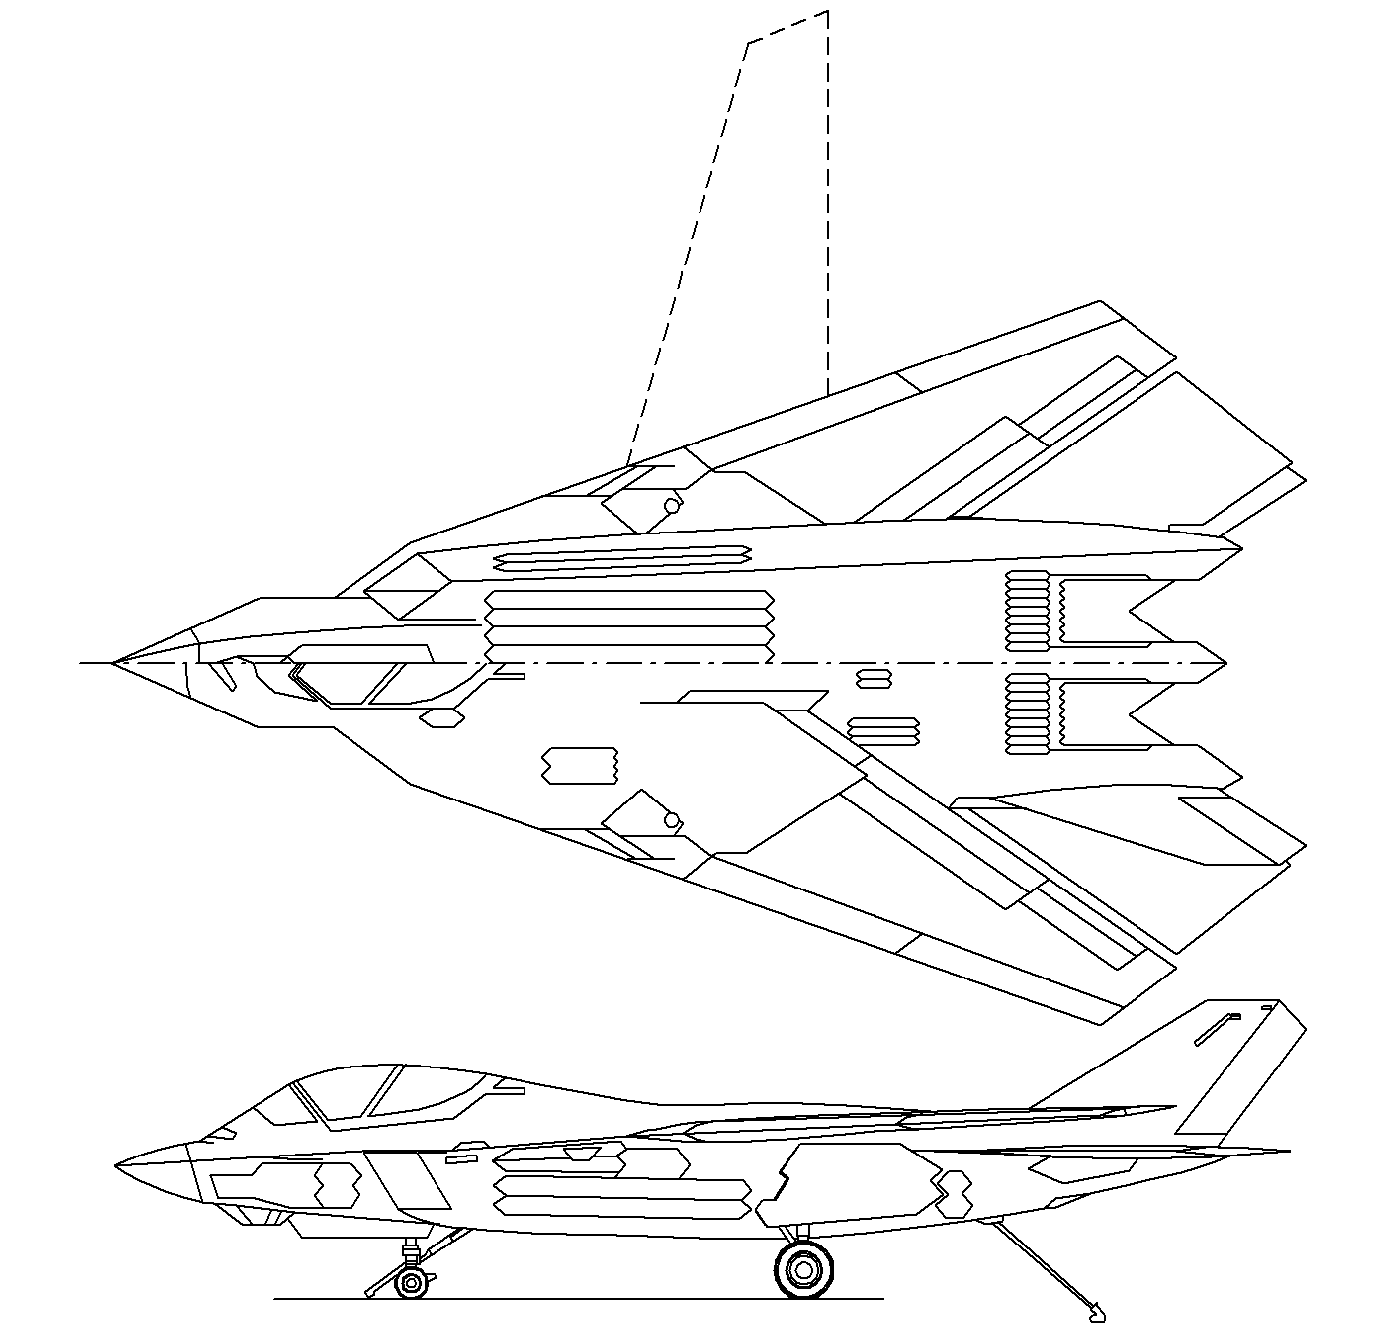 Многоцелевой истребитель F-24 (A/F-X)